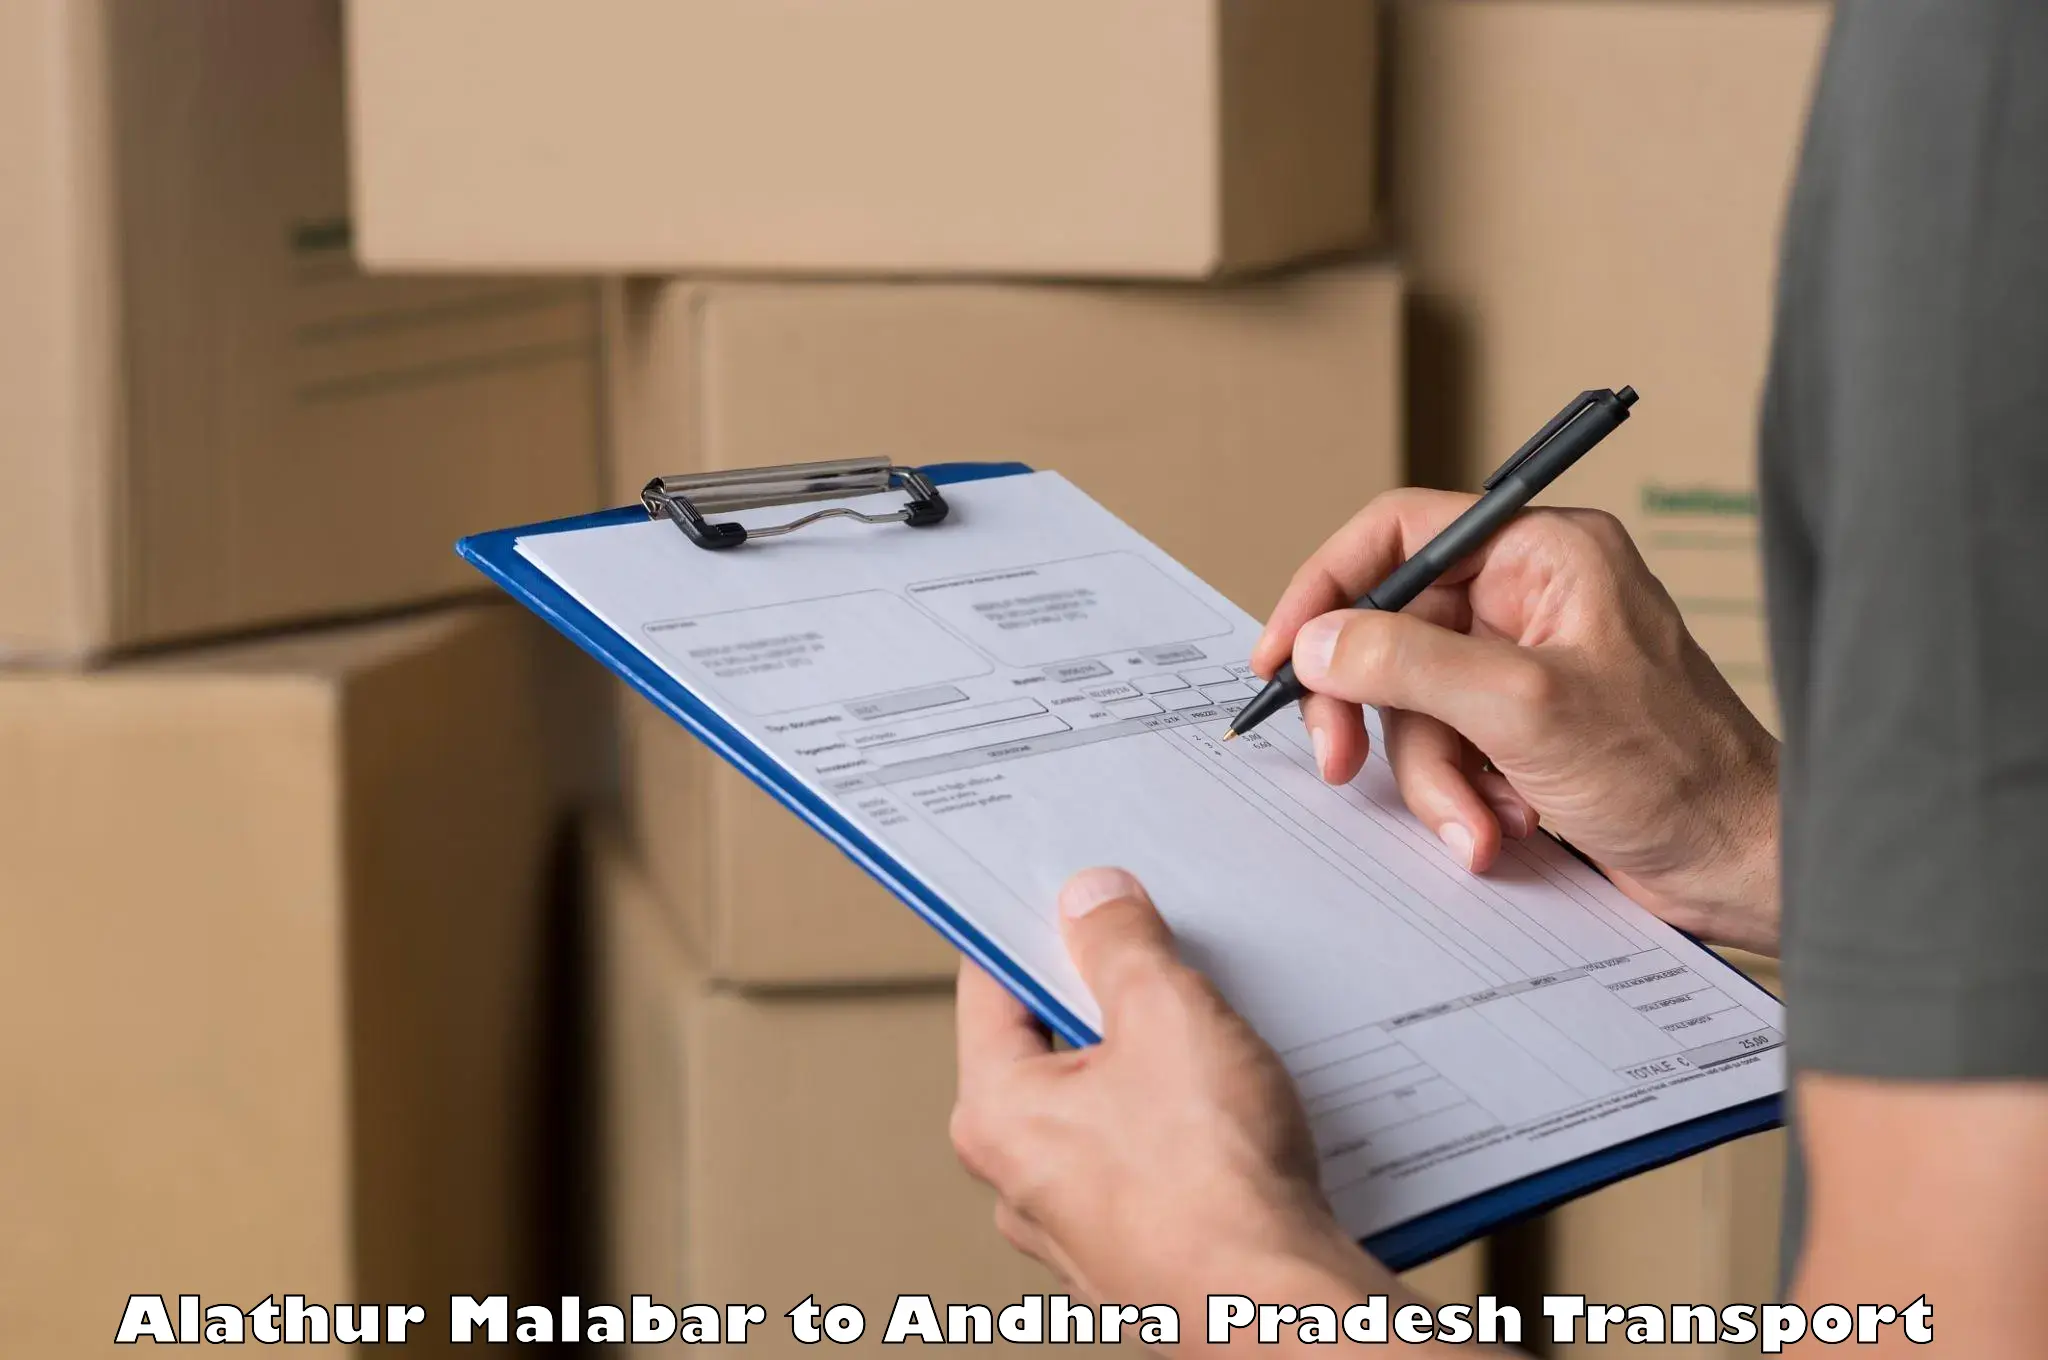 Shipping partner Alathur Malabar to Srikakulam